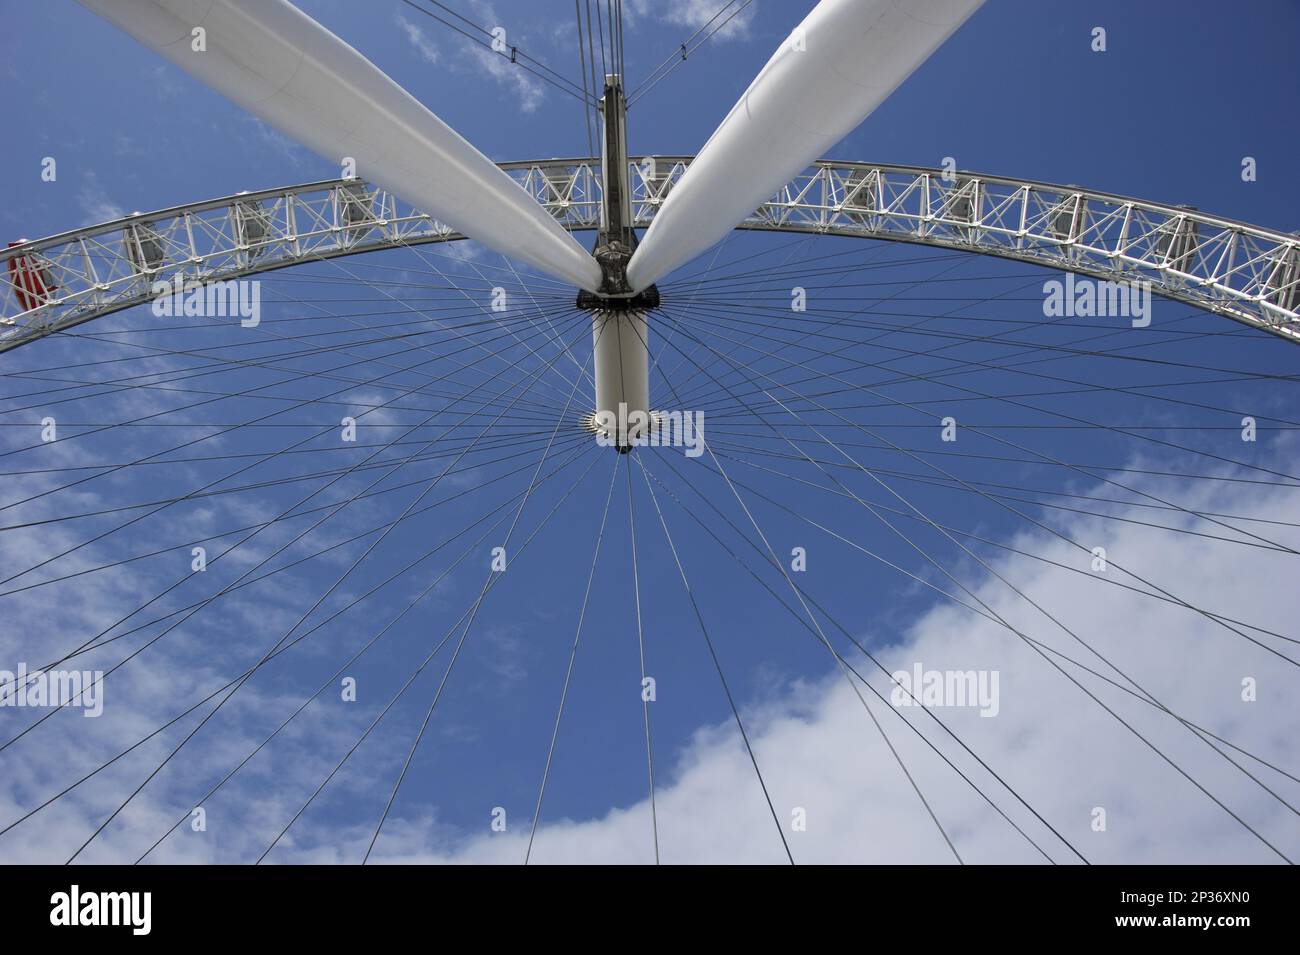 Freitragendes Riesenrad in der Stadt, London Eye, South Bank, Themse, Lambeth, London, England, Vereinigtes Königreich Stockfoto